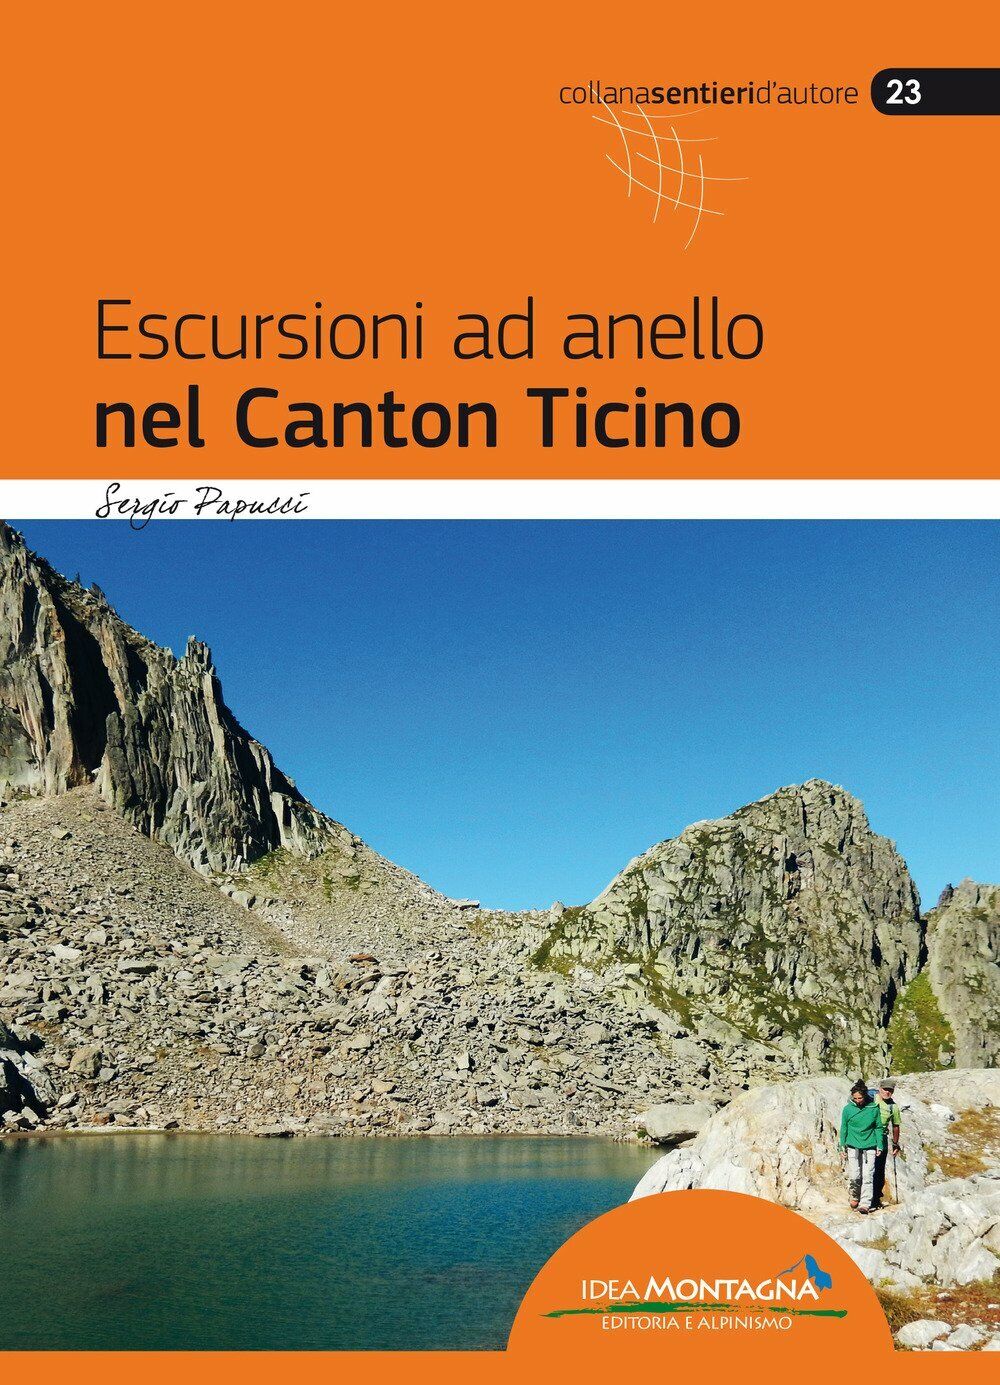 Escursioni ad anello nel Canton Ticino - Sergio Papucci - idea montagna, 2018 libro usato